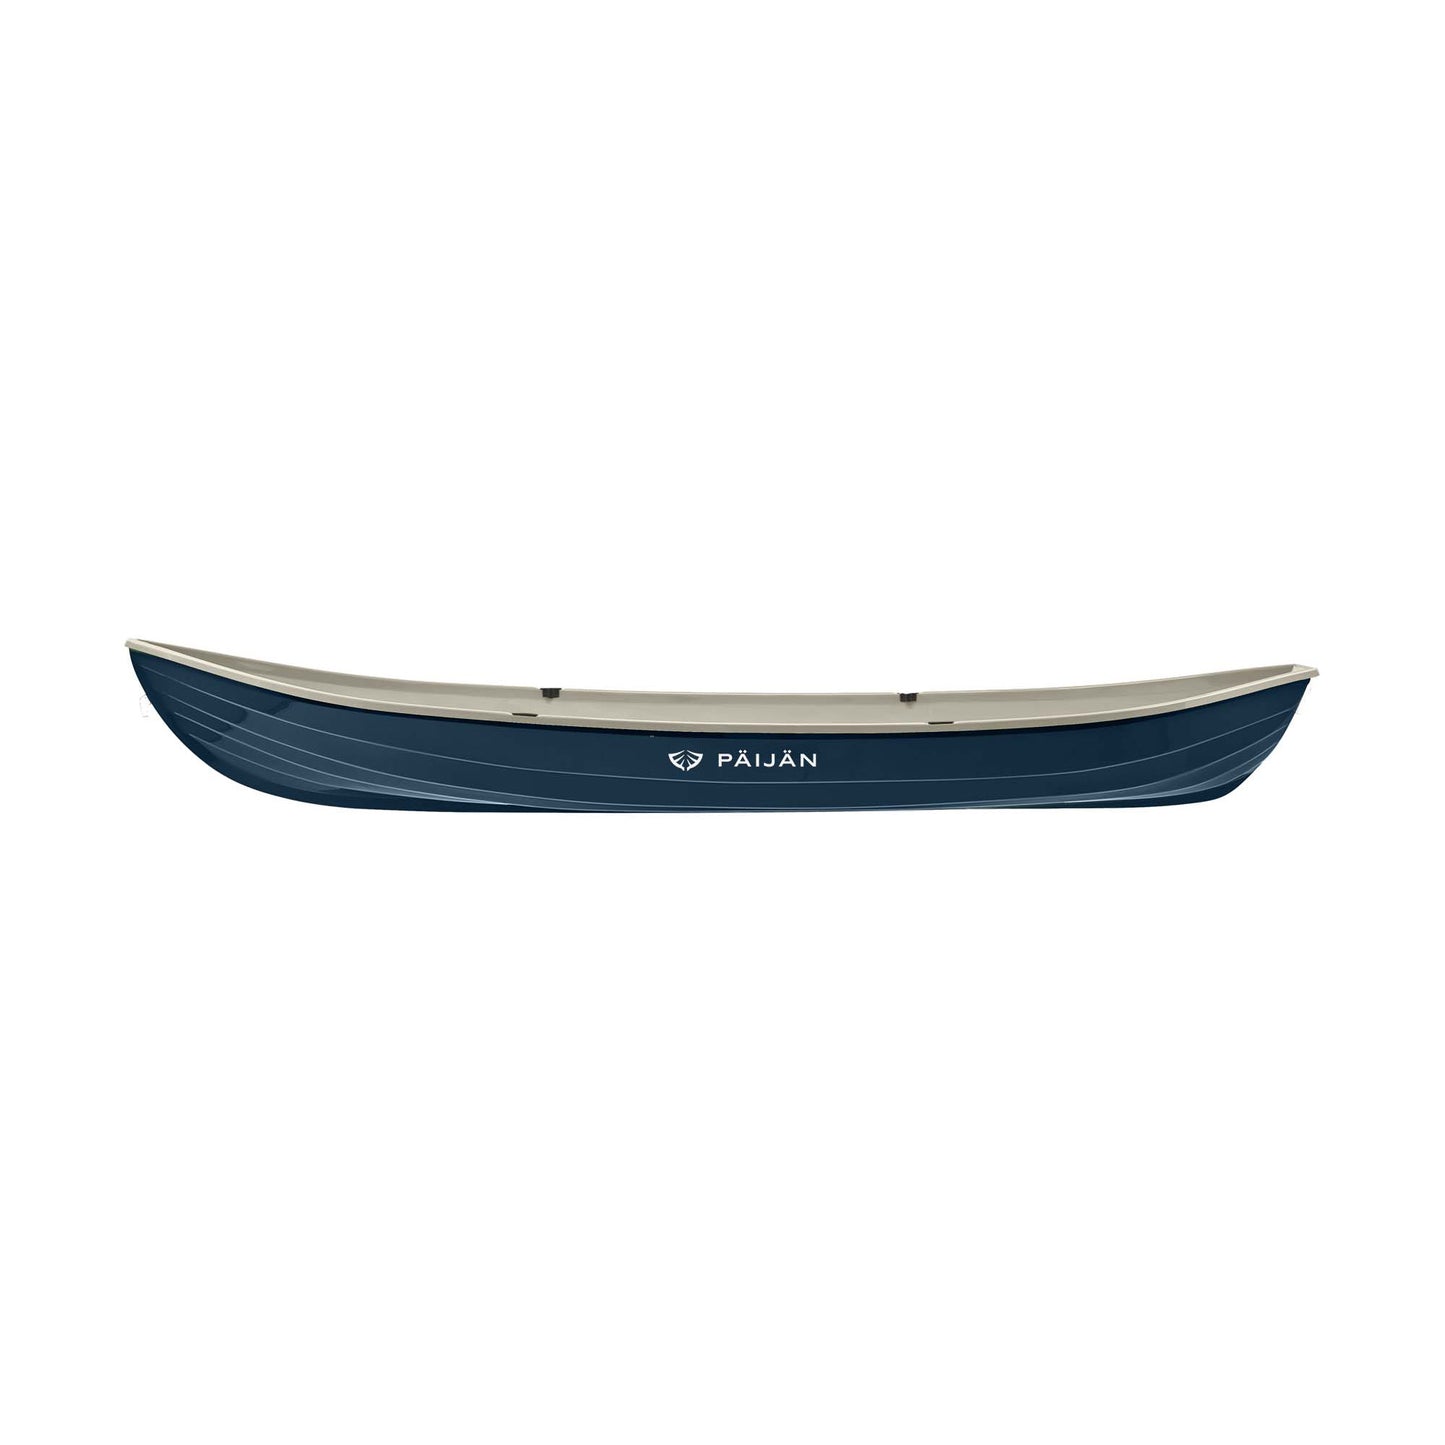 Päijän Syvänne 520Le rowing boat - Limited Edition